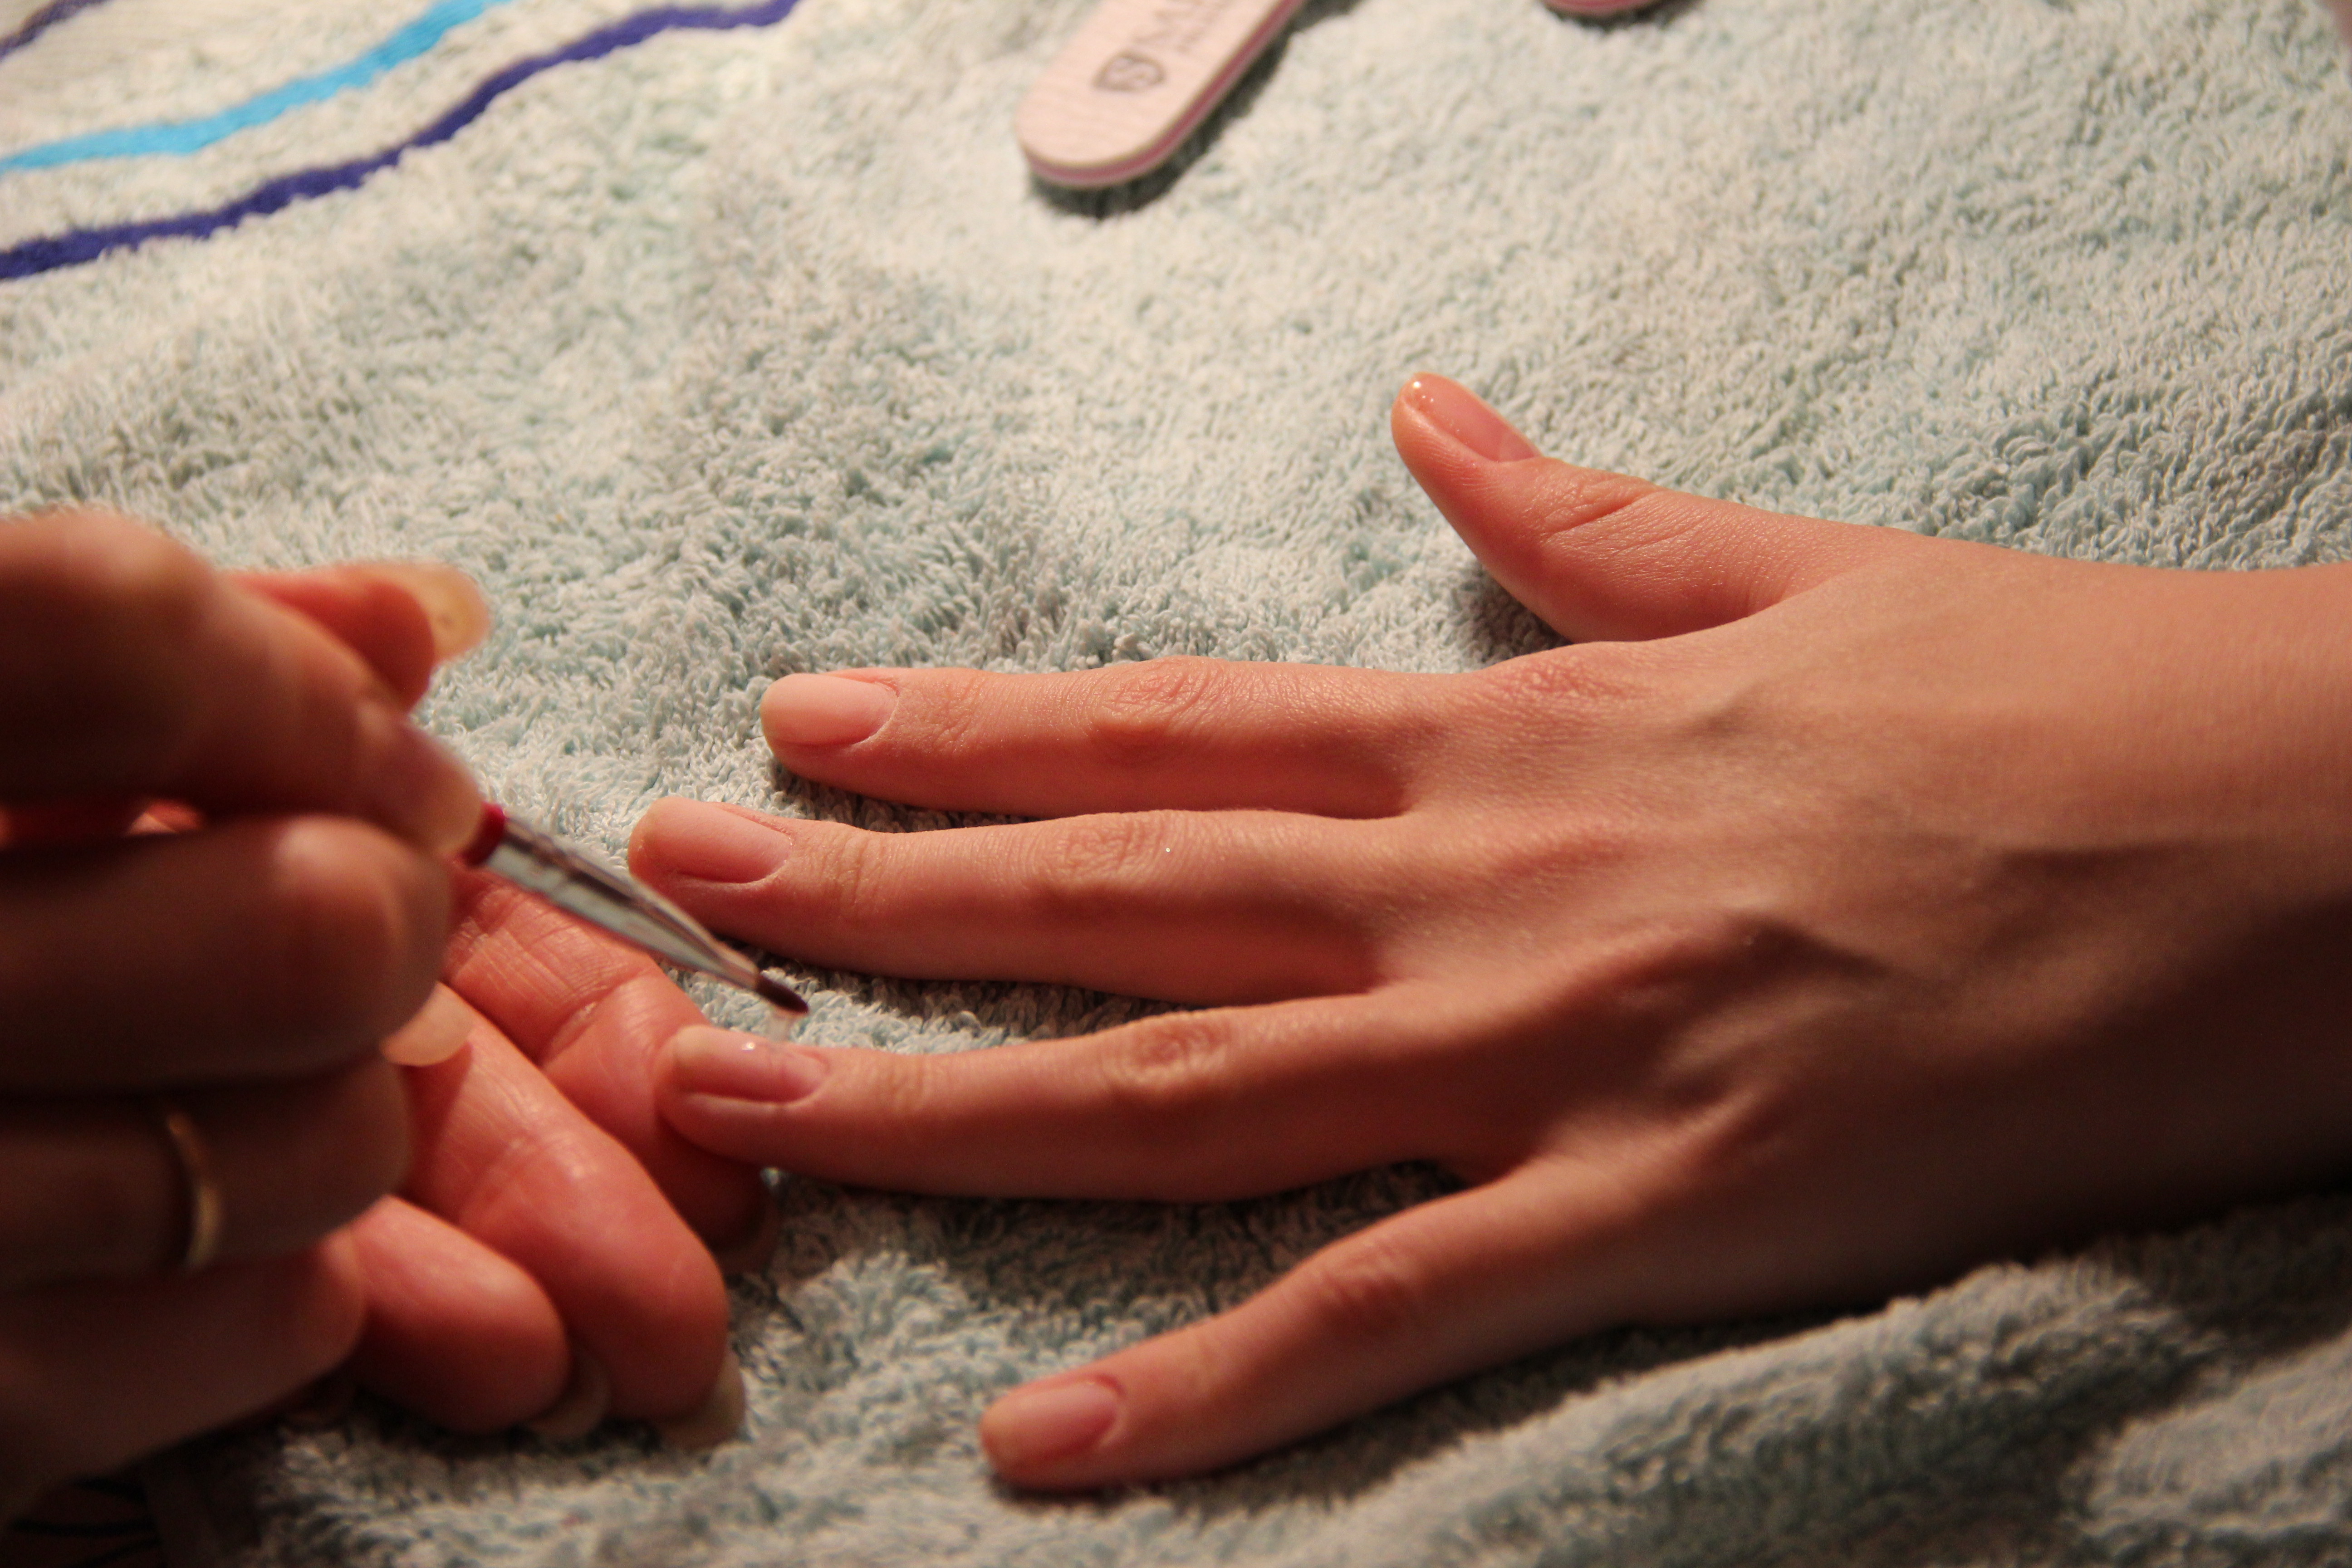 Укрепление ногтей: гелем, пудрой, ванночки в домашних условиях